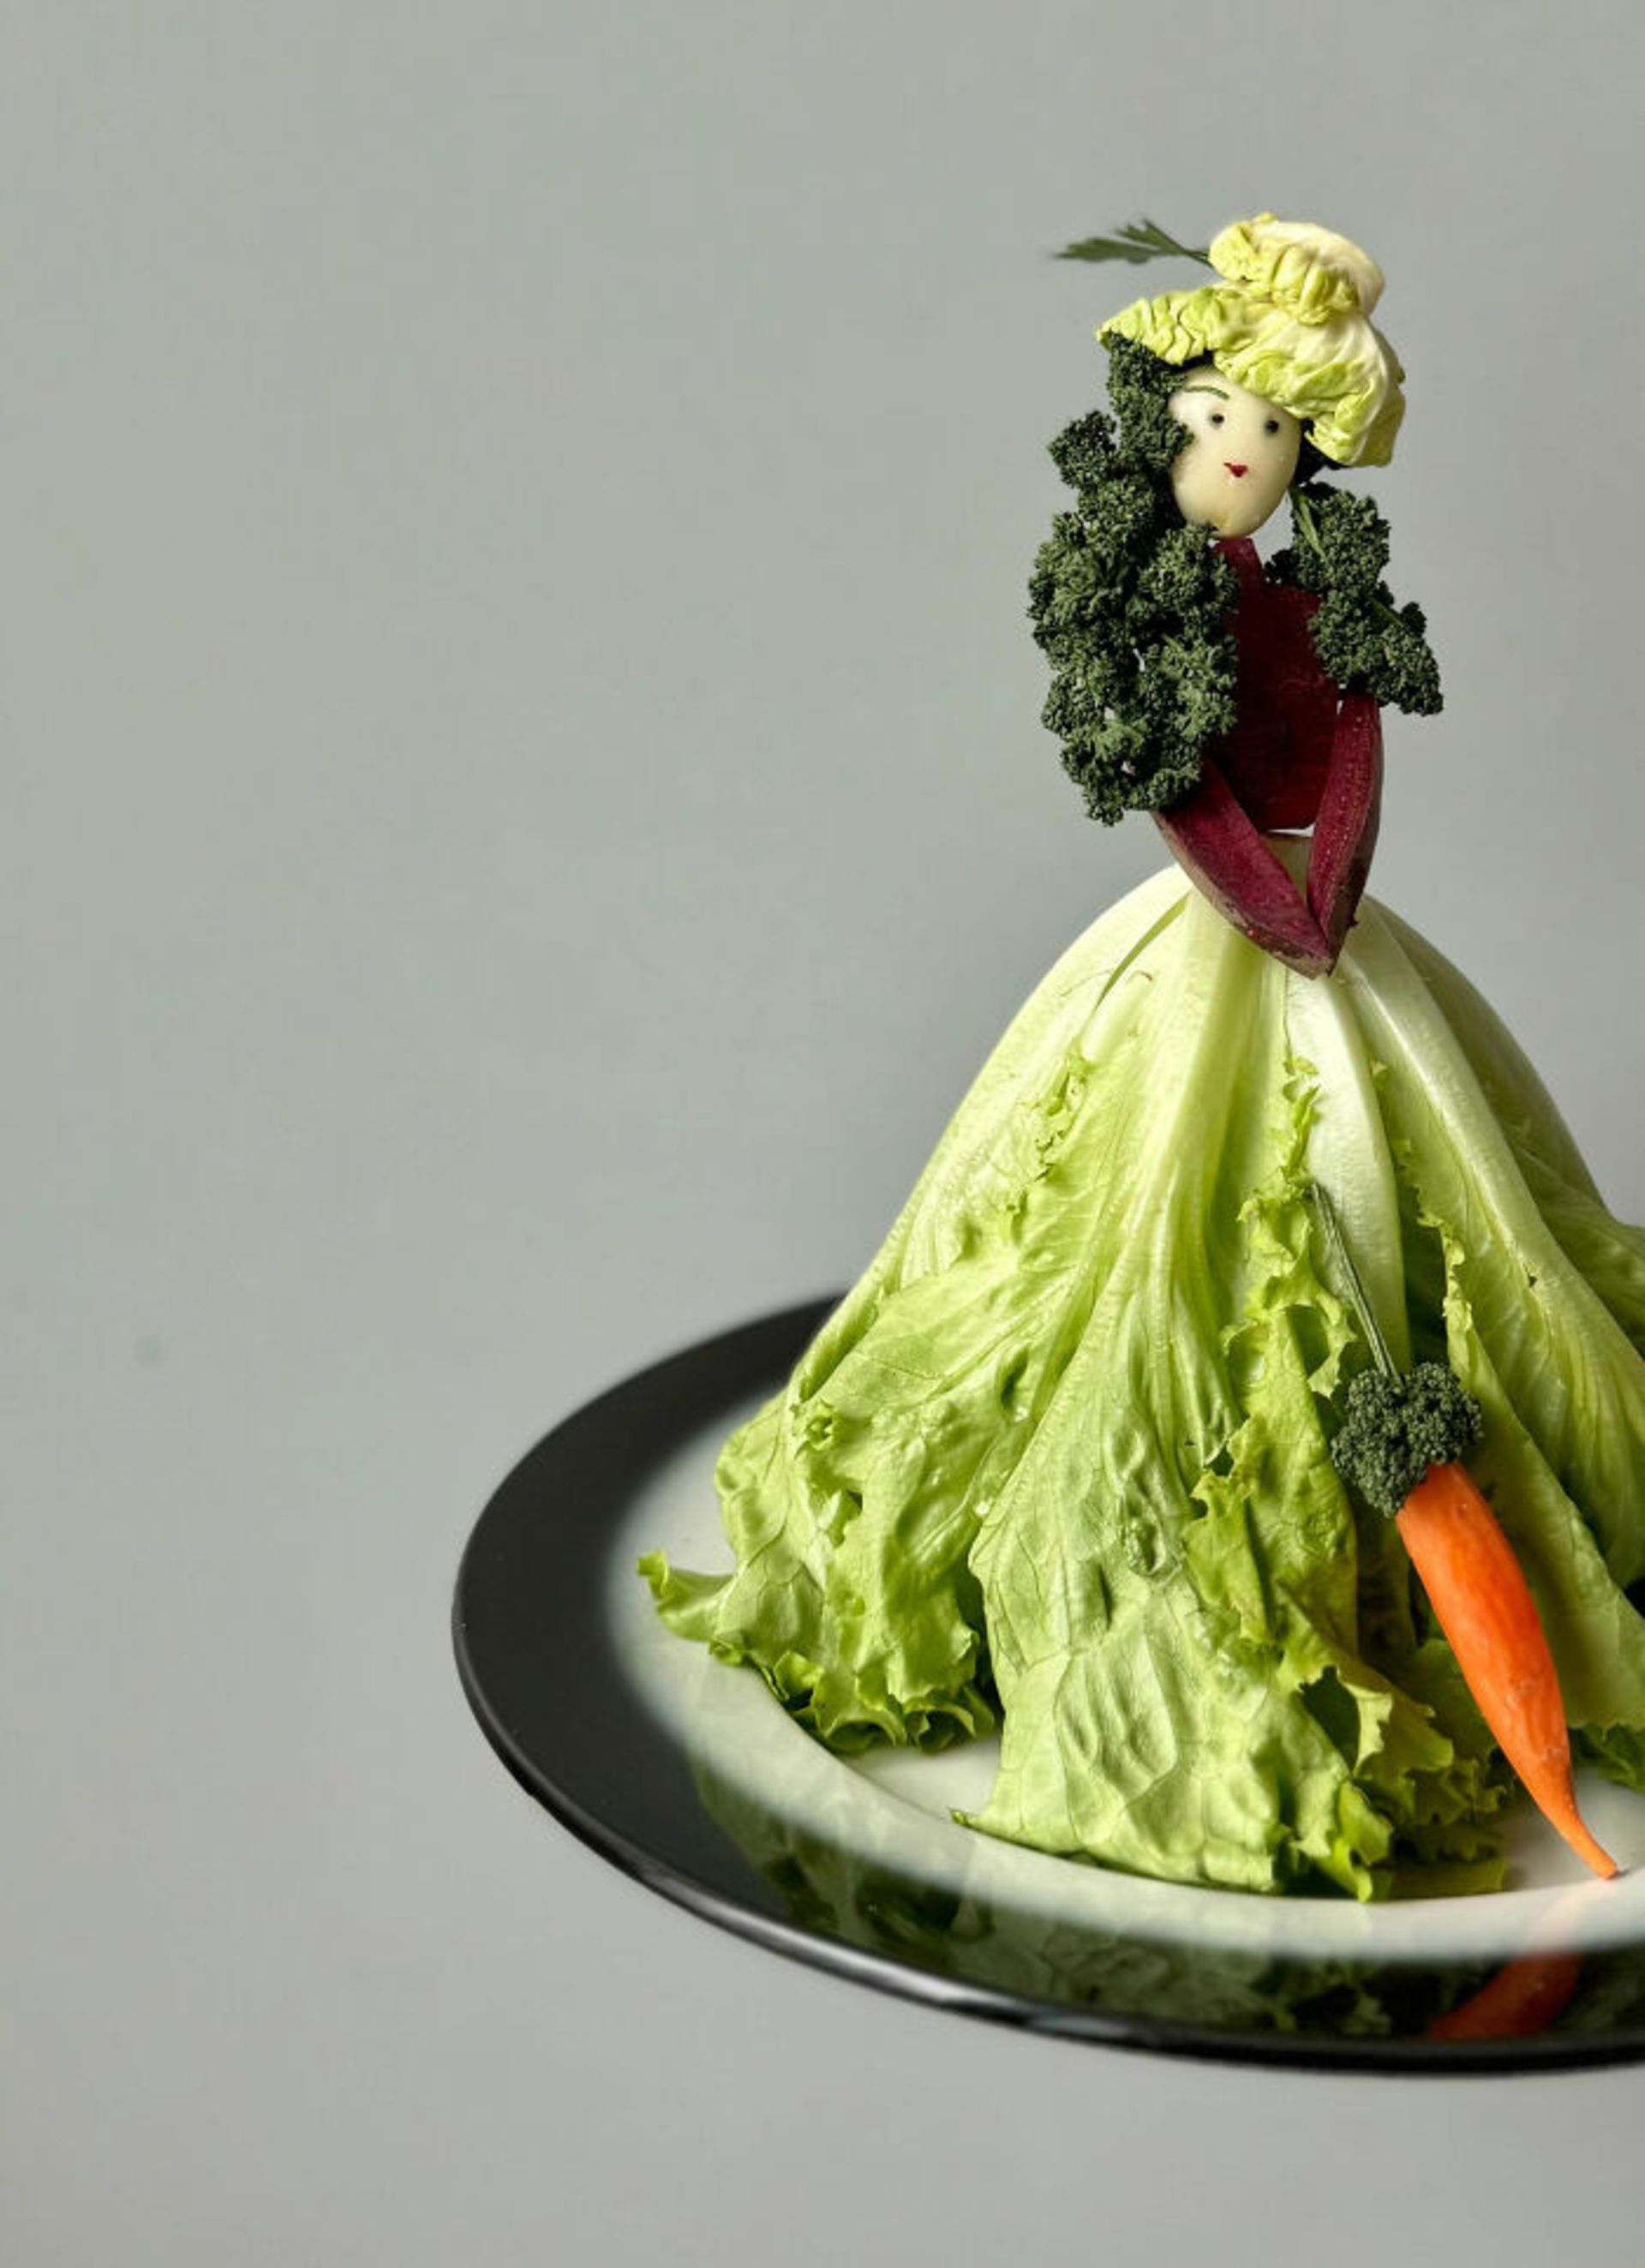 تزیین غذا سبزیجات به شکل بانو با چتر